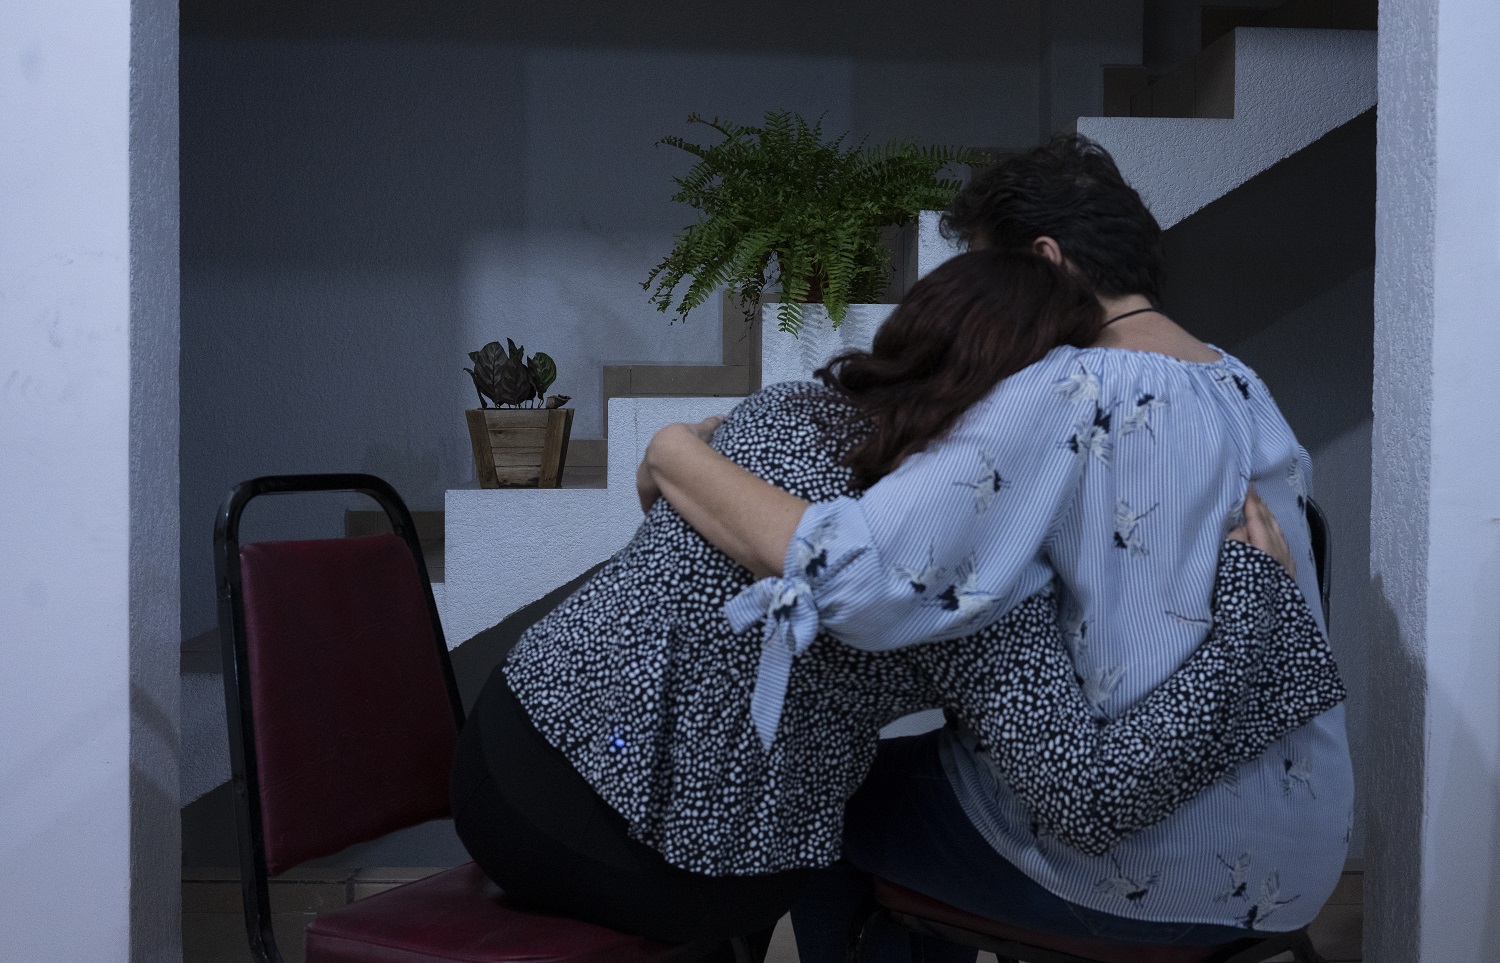 Sara abraza a su madre, una de las jóvenes detenidas por policías municipales de León, Guanajuato, el 22 de agosto del 2020. Sara quien asistió a la protesta para exigir justicia por una joven que denunció ser víctima de acoso sexual y tocamientos por parte de agentes policiales | Foto: Mónica González